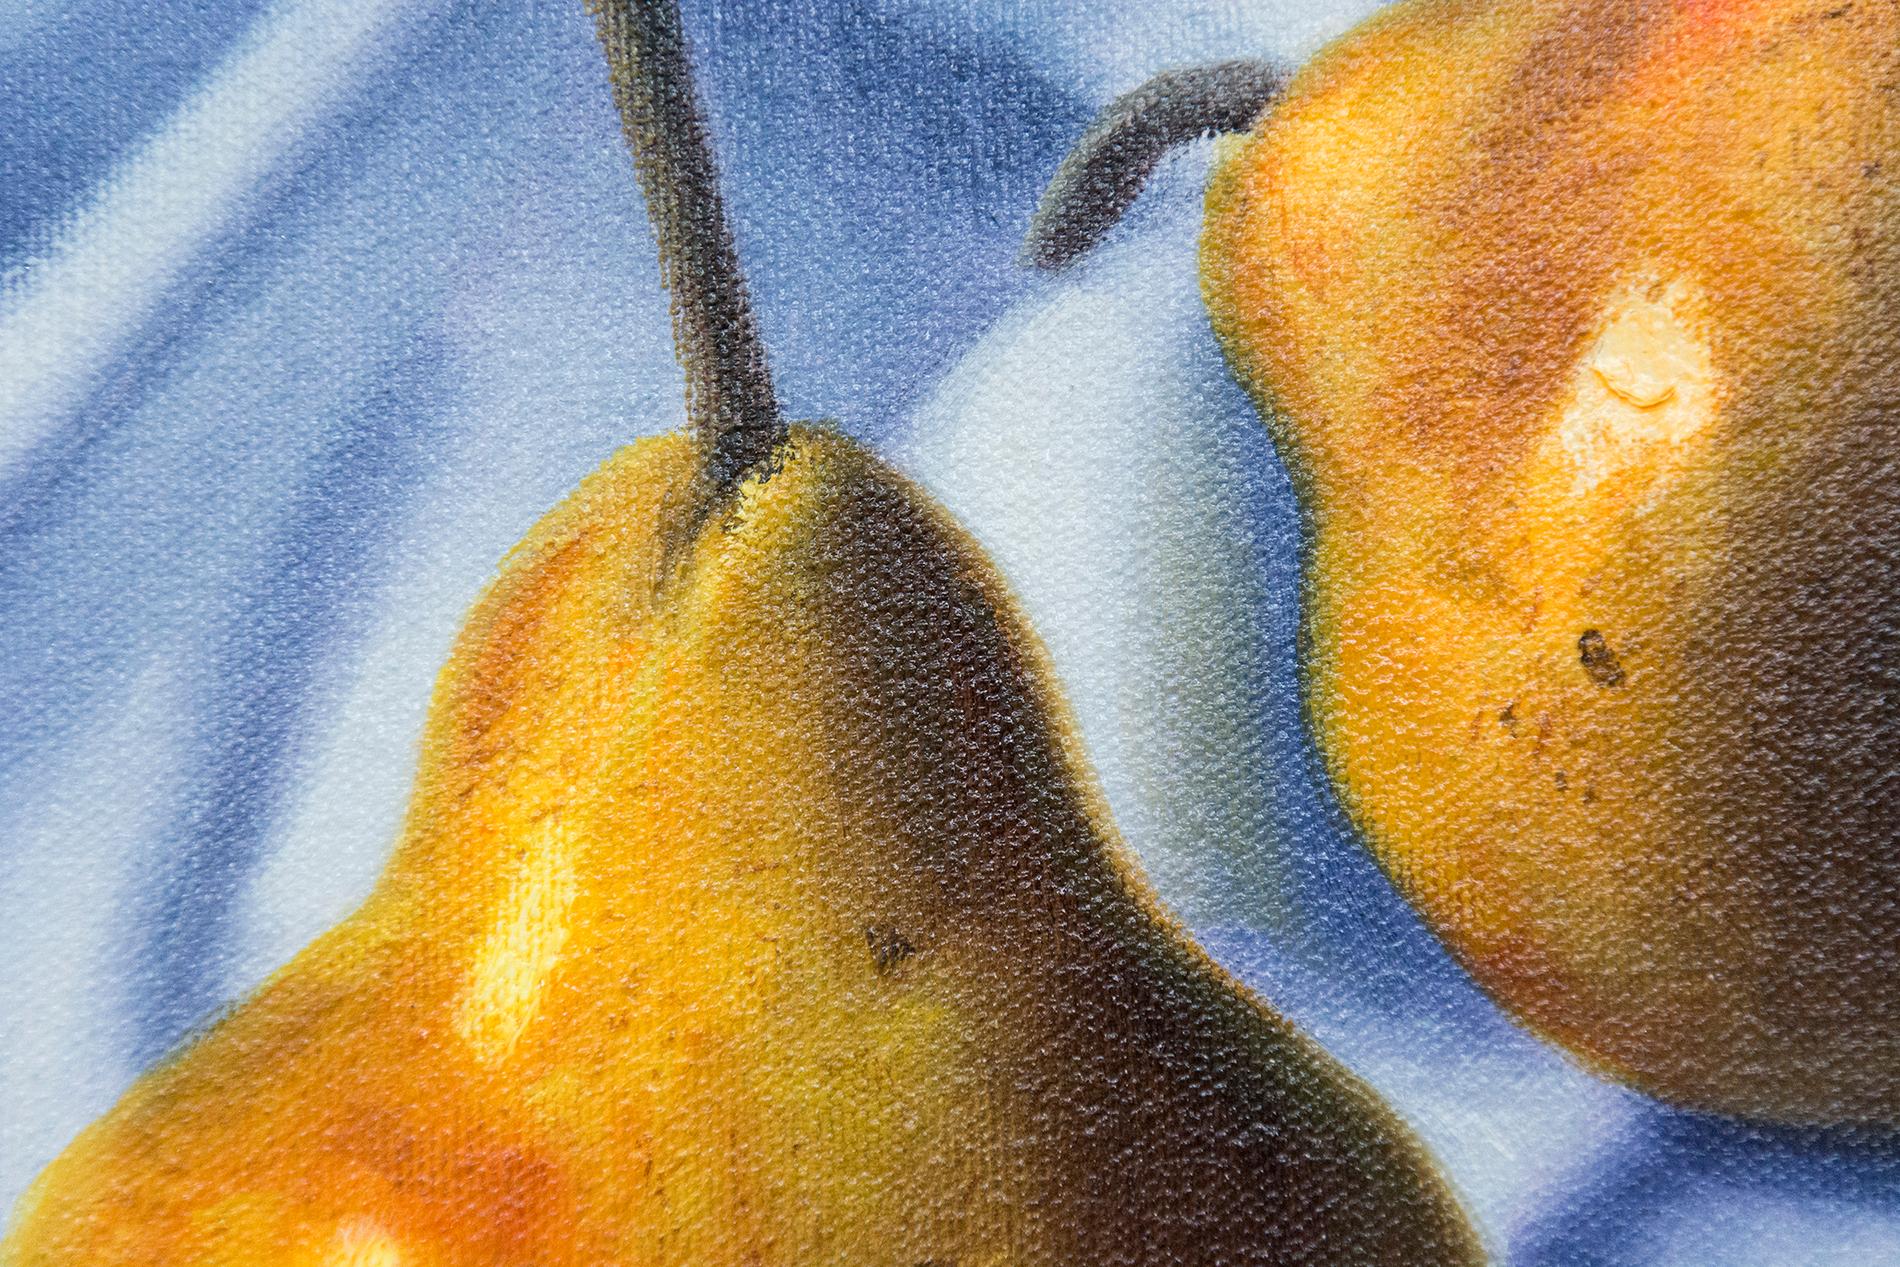 Auf diesem realistischen und intimen Ölgemälde auf Leinwand von Ciba Karisik sind saftige goldene Birnen auf einem blau-weißen Tuch arrangiert. Neben dem geschickten Einsatz von Trompe l'Oeil hat der Künstler die Bedeutung des Themas durch